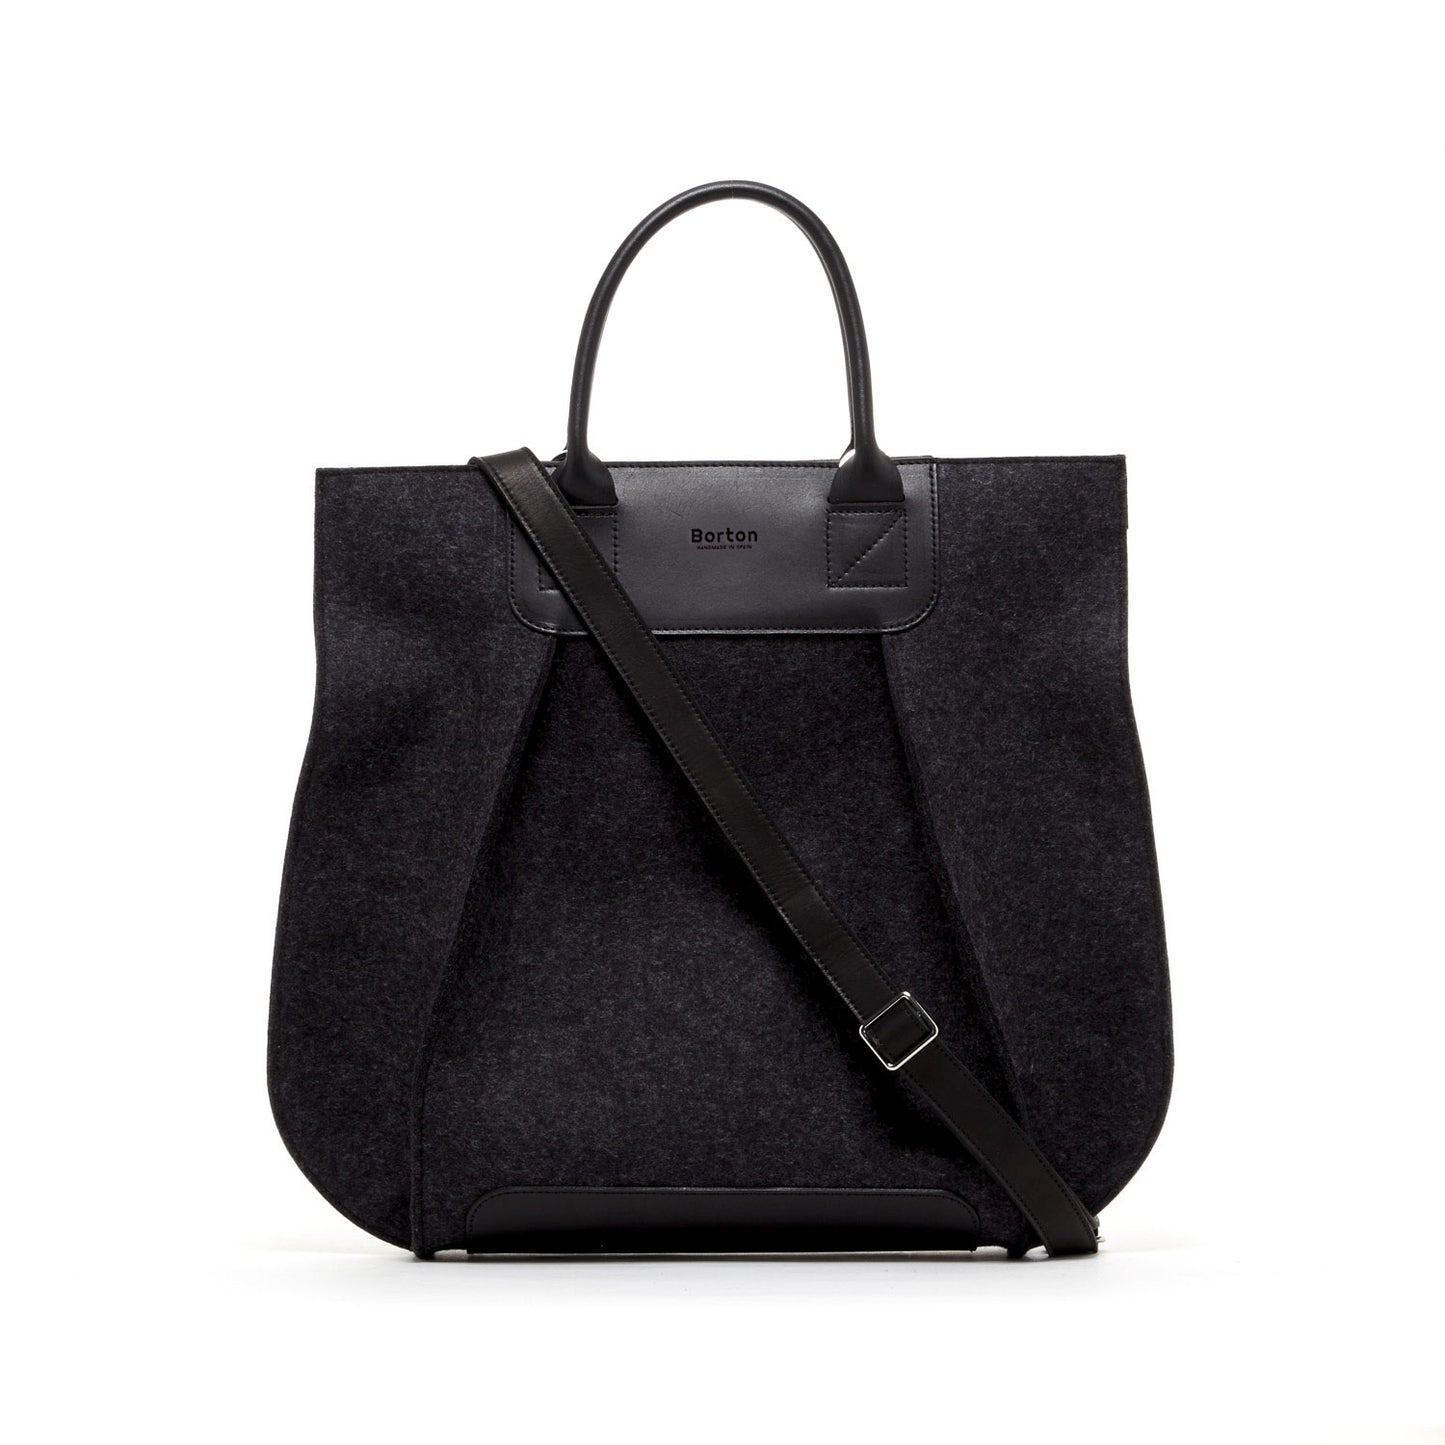 Belis Tote Handbag Black Felt & Black Leather